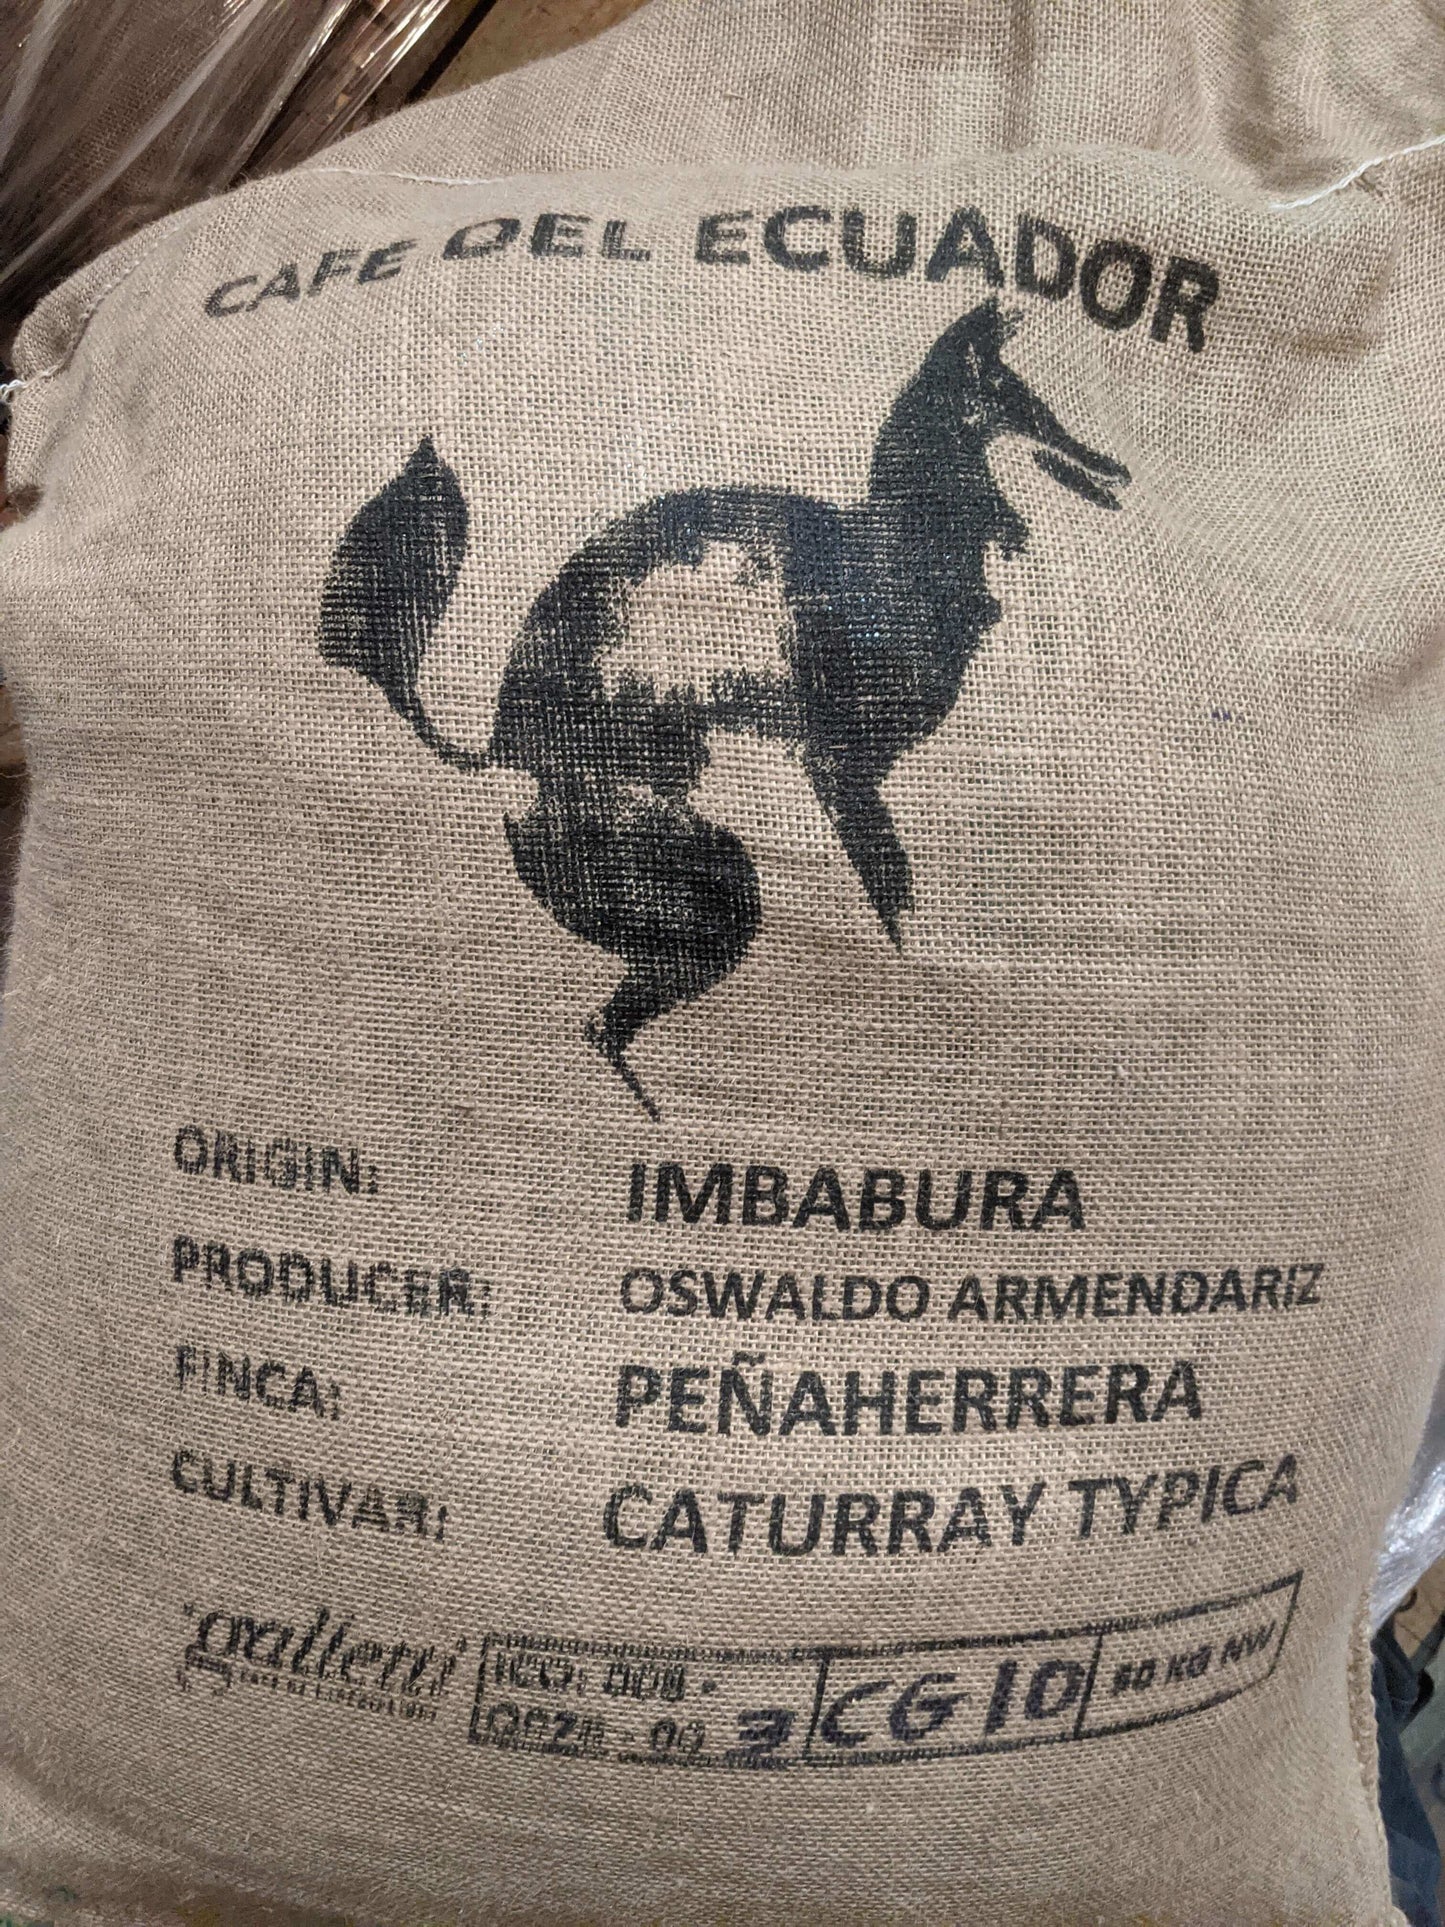 Ecuador Imbabura